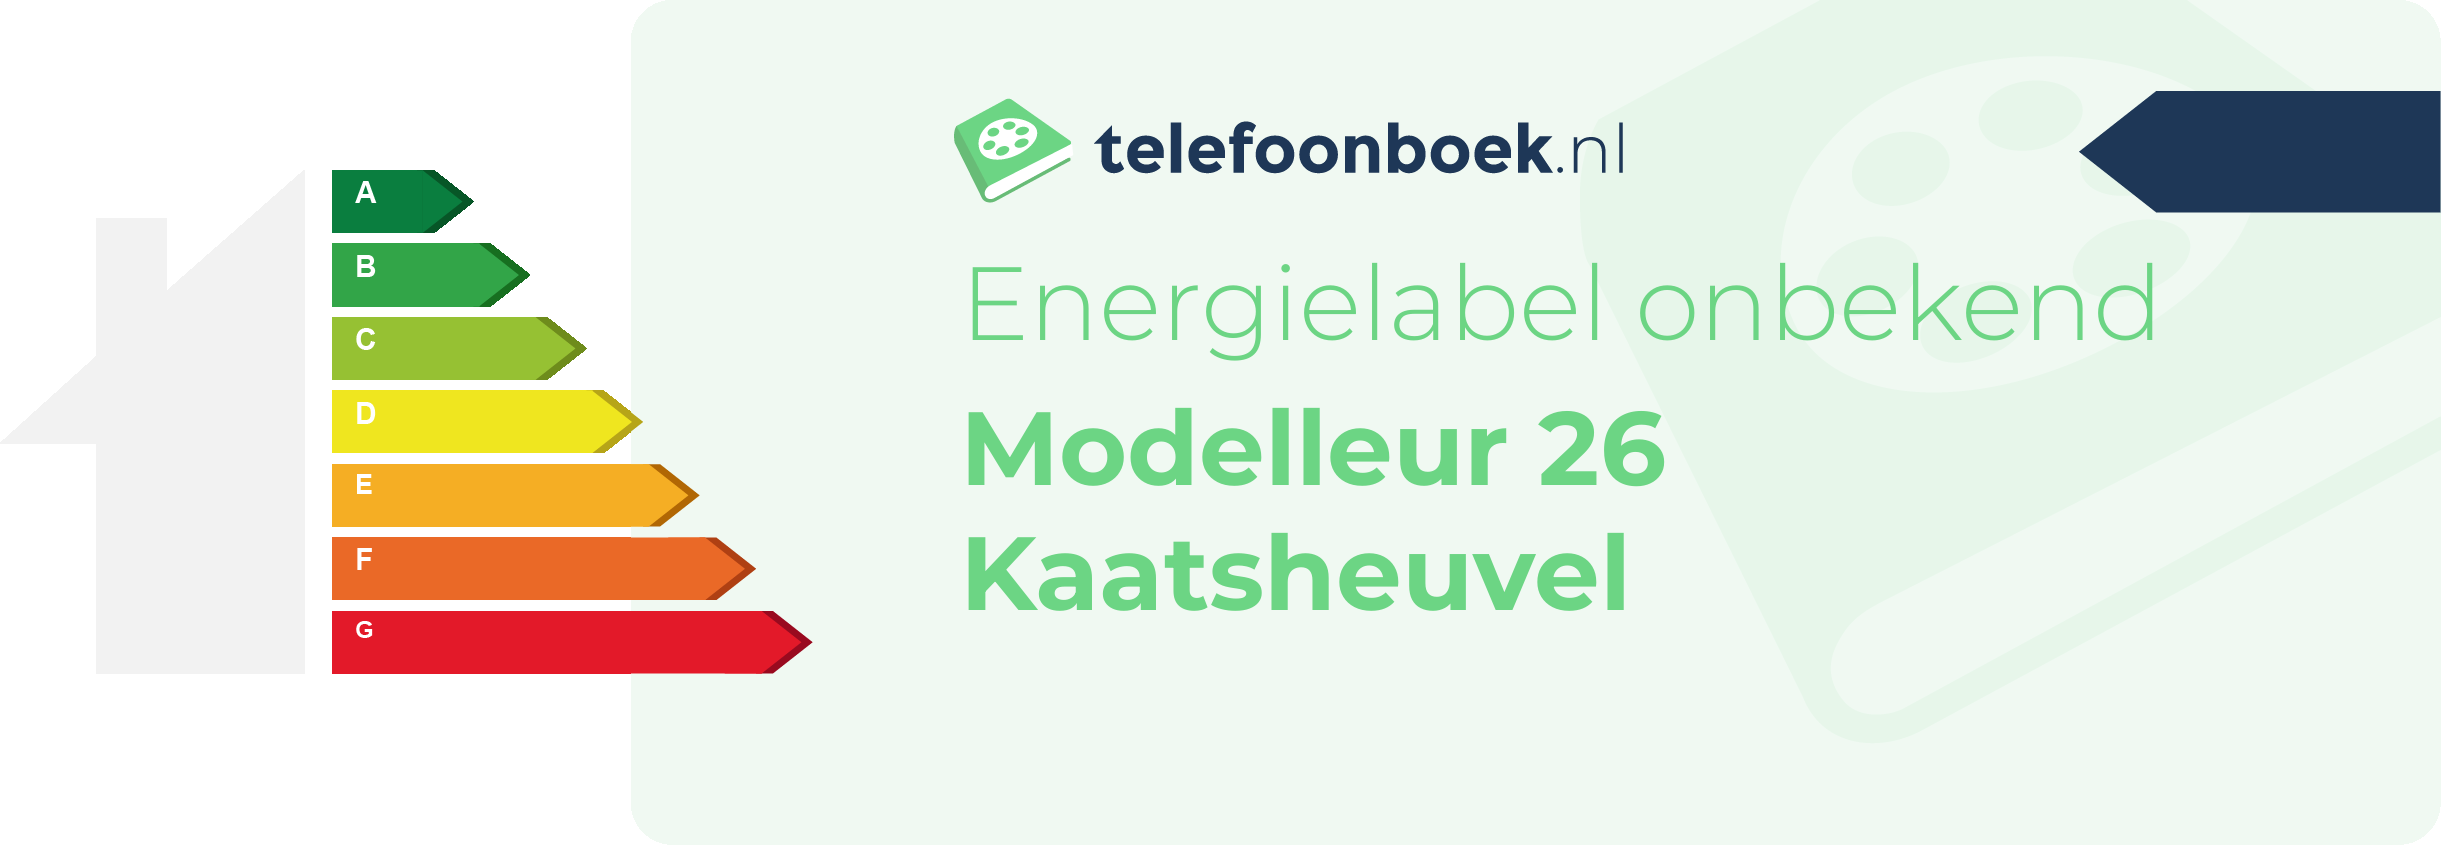 Energielabel Modelleur 26 Kaatsheuvel